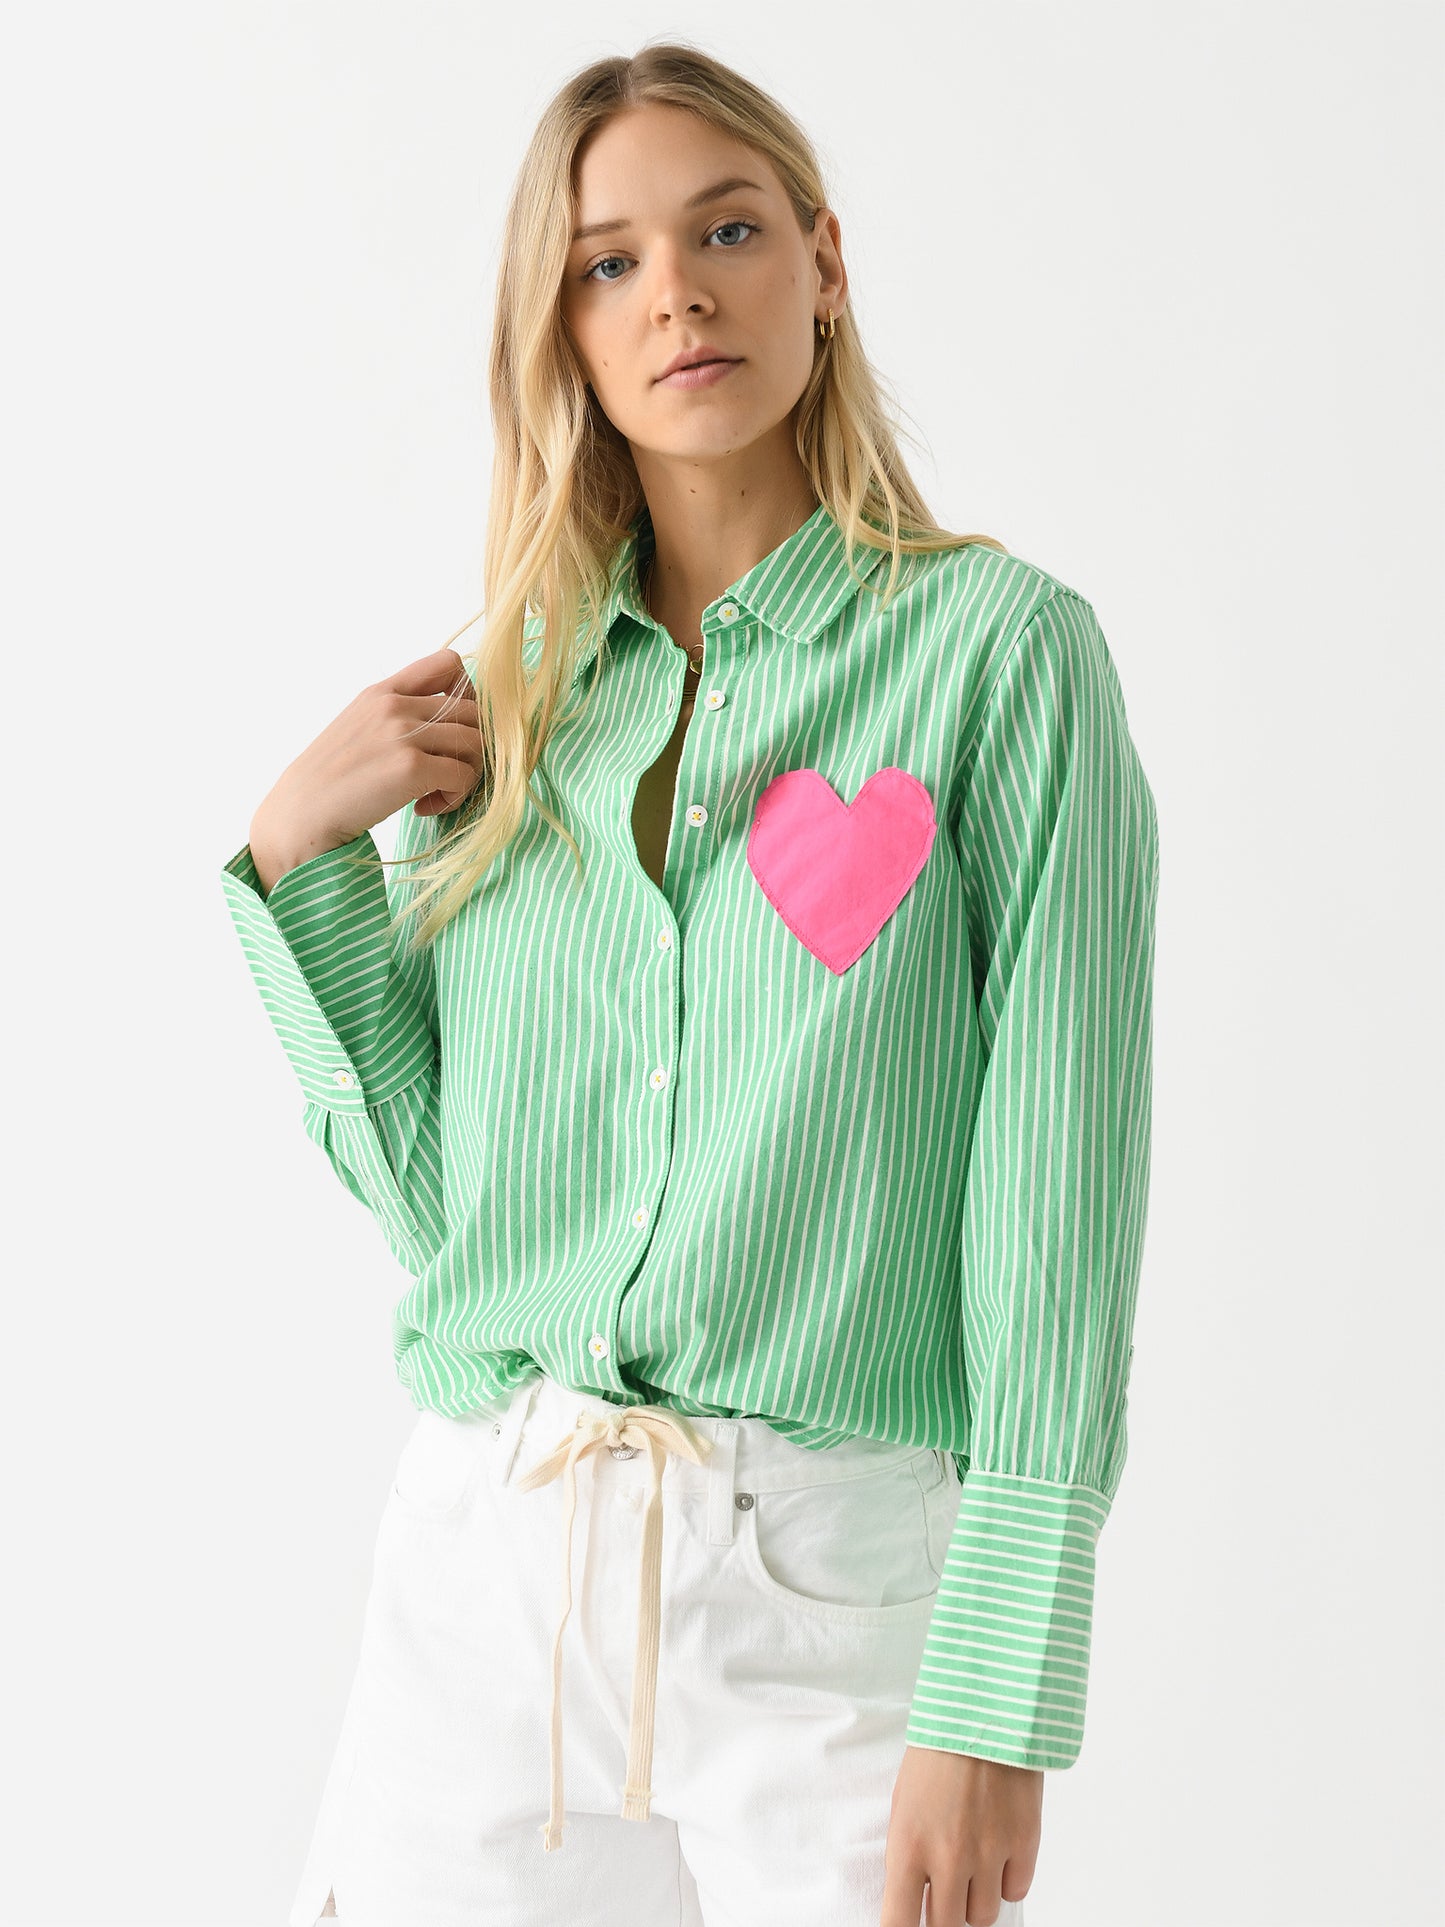 Kerri Rosenthal Women's Mia Heart Patch Shirt